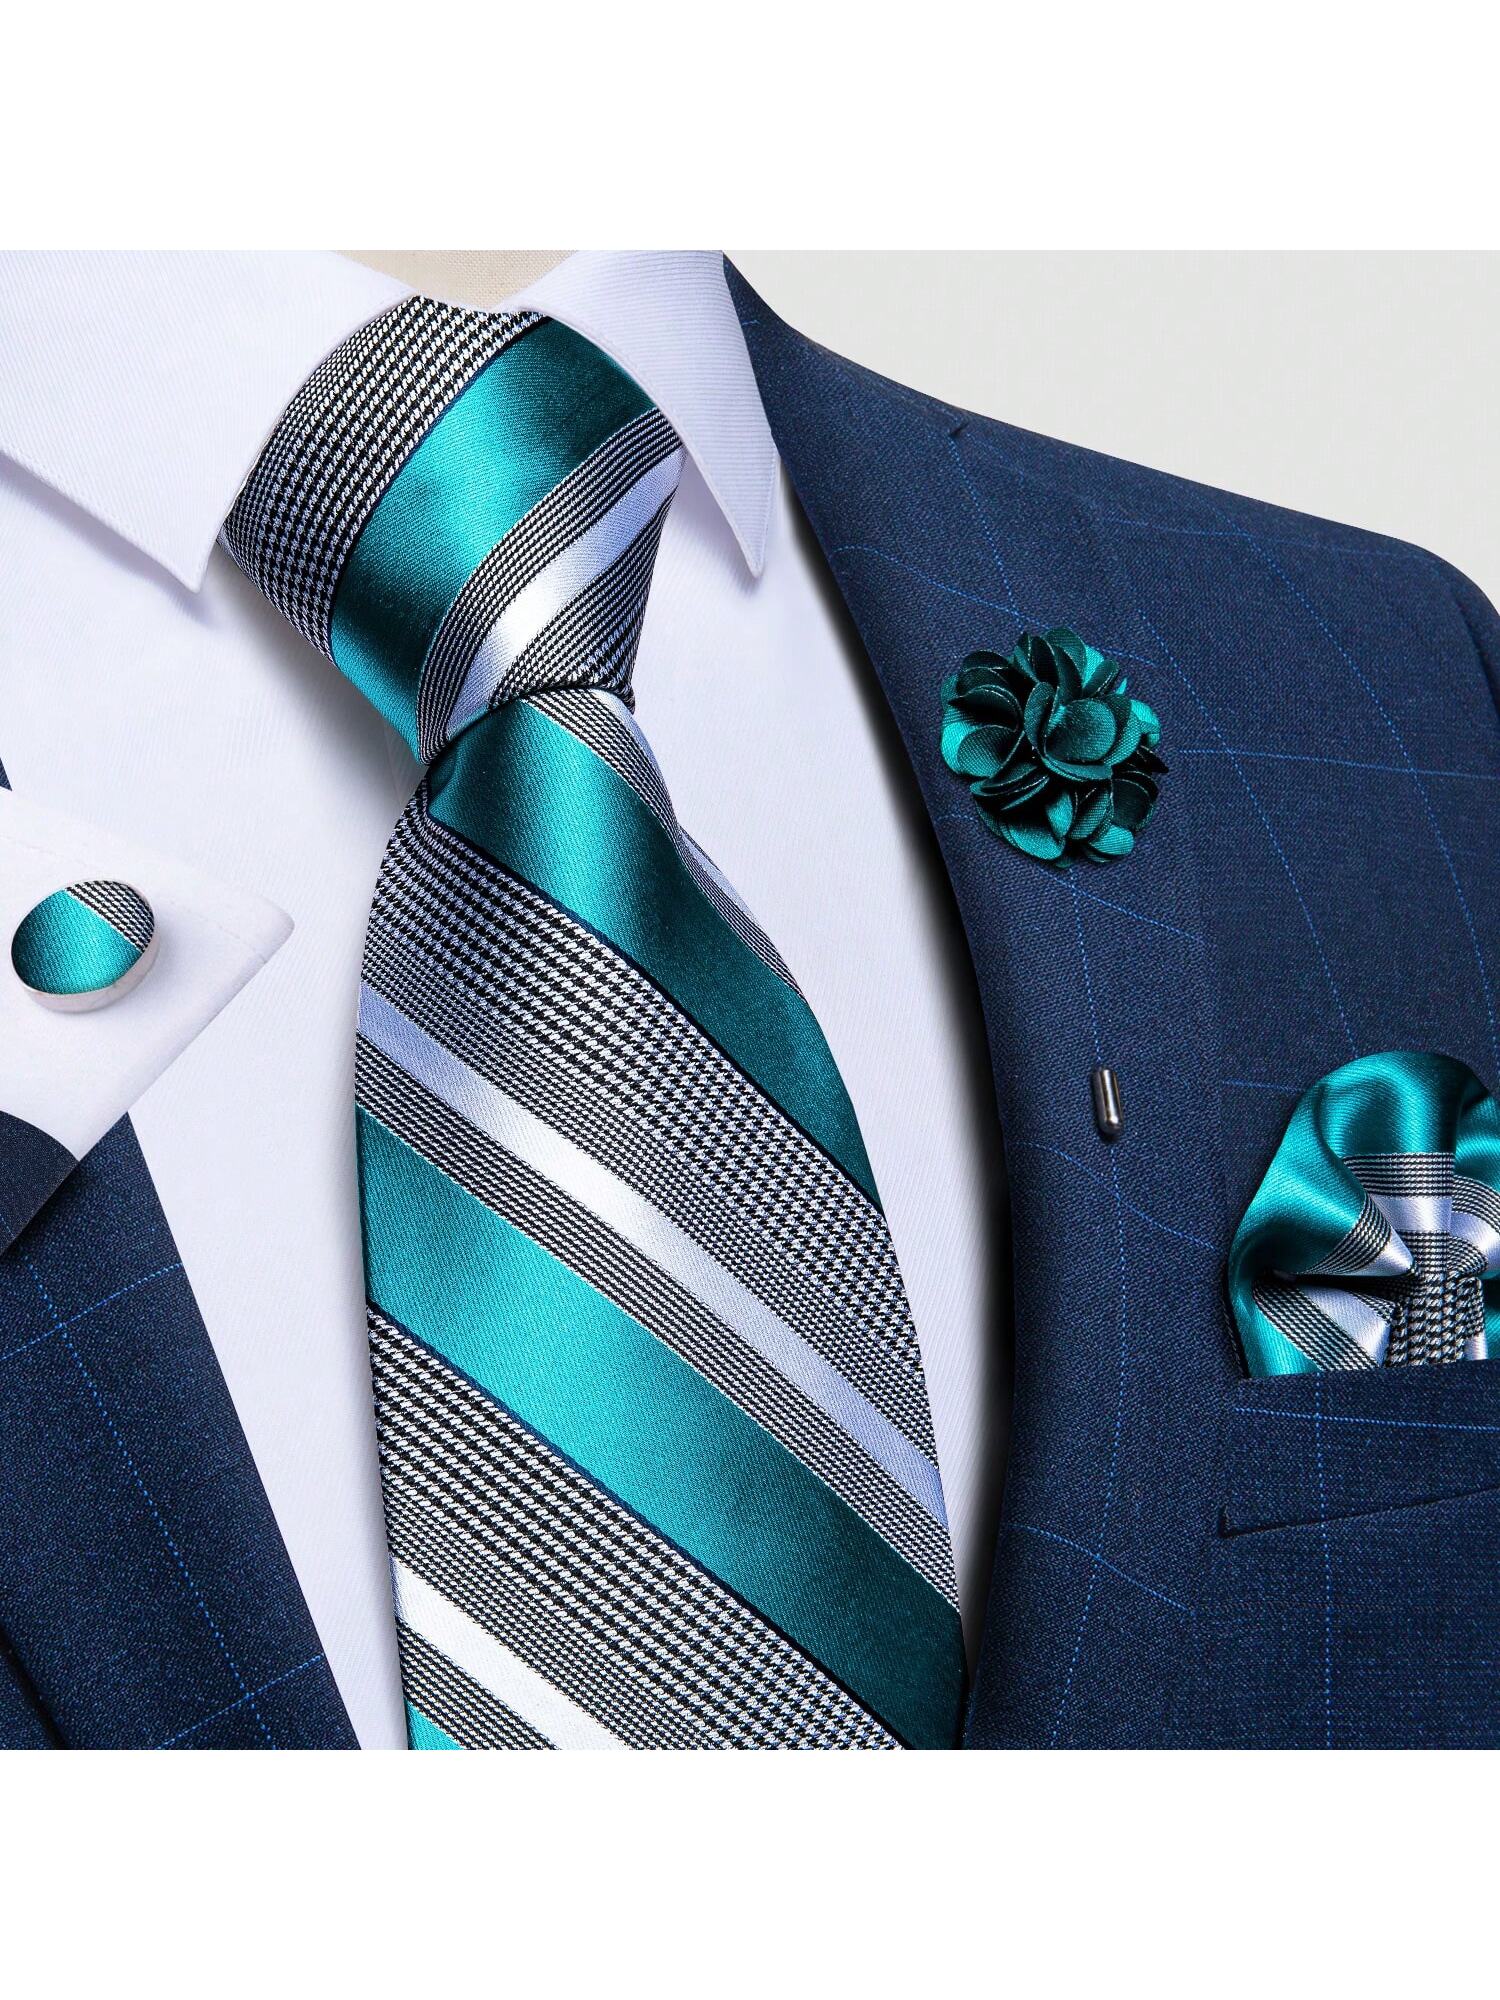 dibangu мужской галстук шелковый красный синий однотонный свадебный галстук карманные квадратные запонки зажим набор пейсли желтый DiBanGu мужские галстуки, зеленый